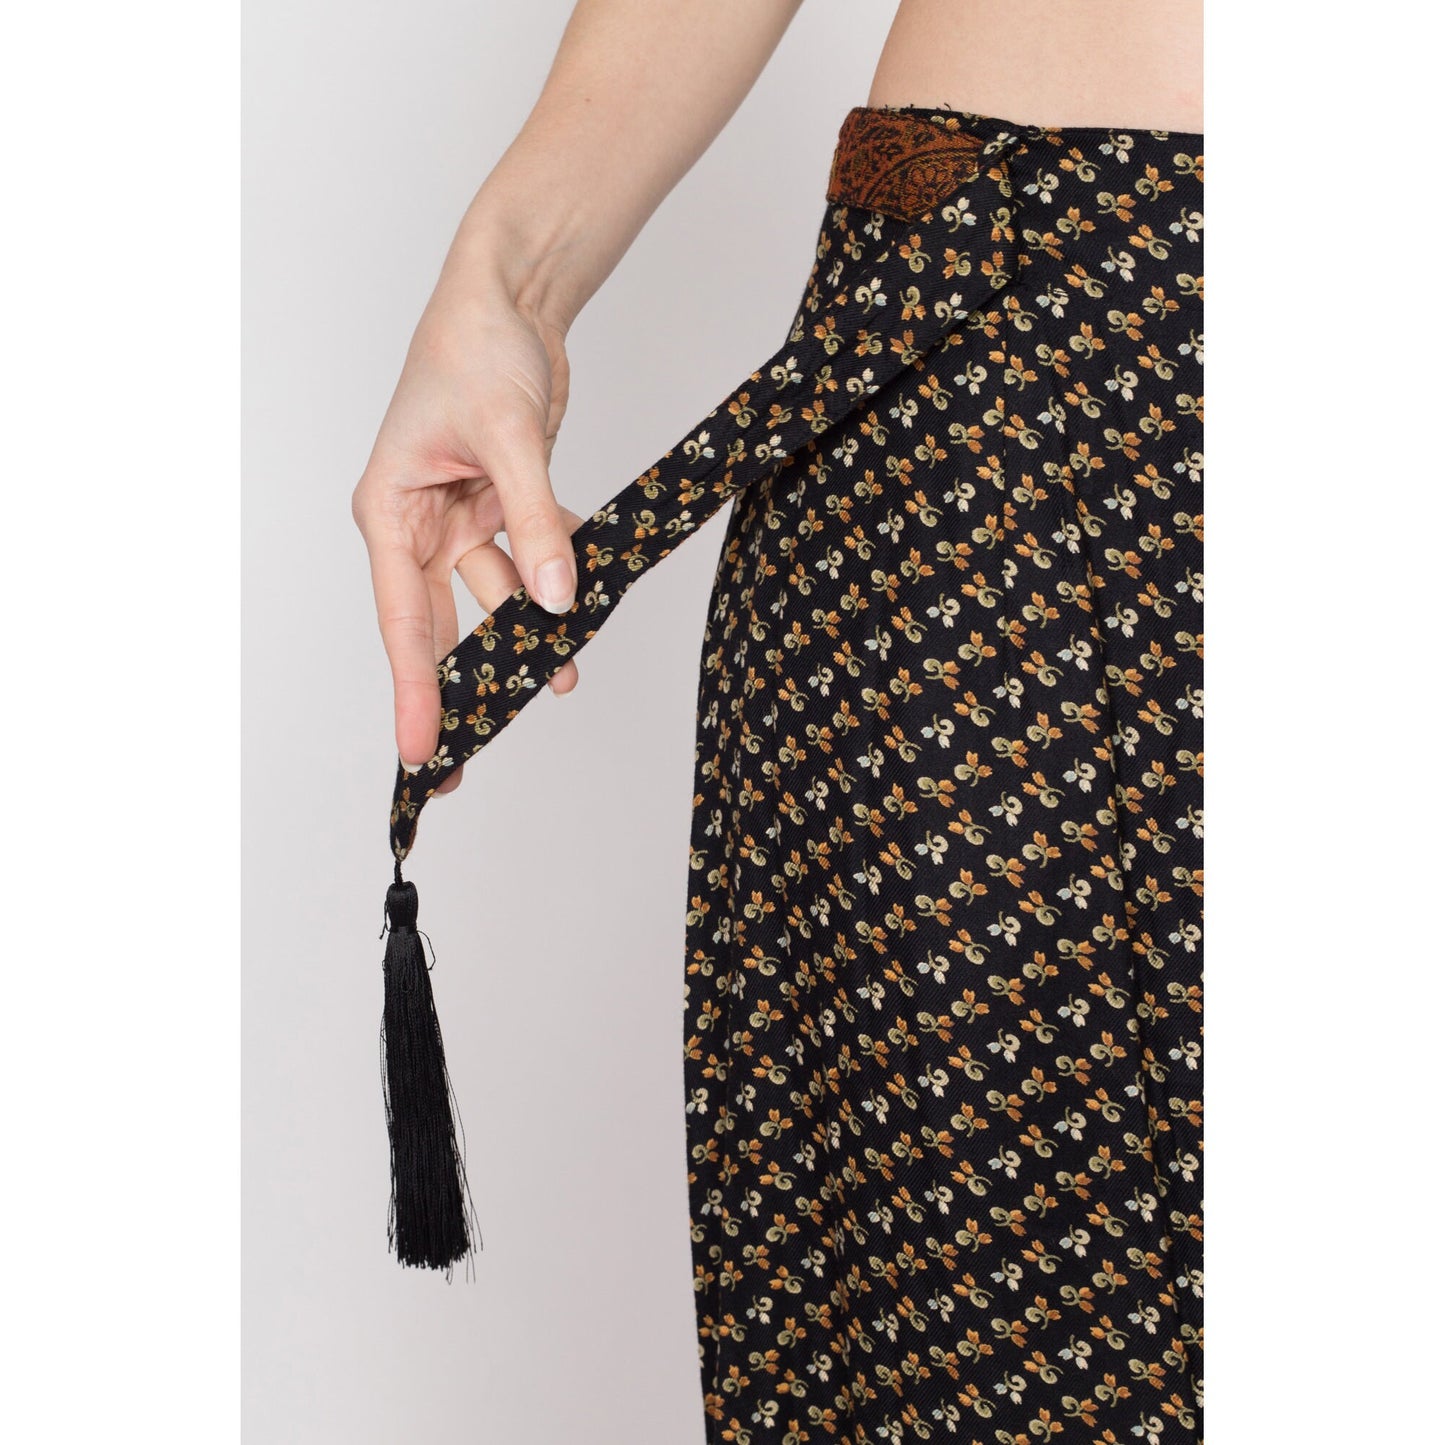 Sm-Med 90s April Cornell Black Floral Tassel Belt Maxi Skirt 28" | Vintage High Waisted A Line Boho Long Rayon Skirt